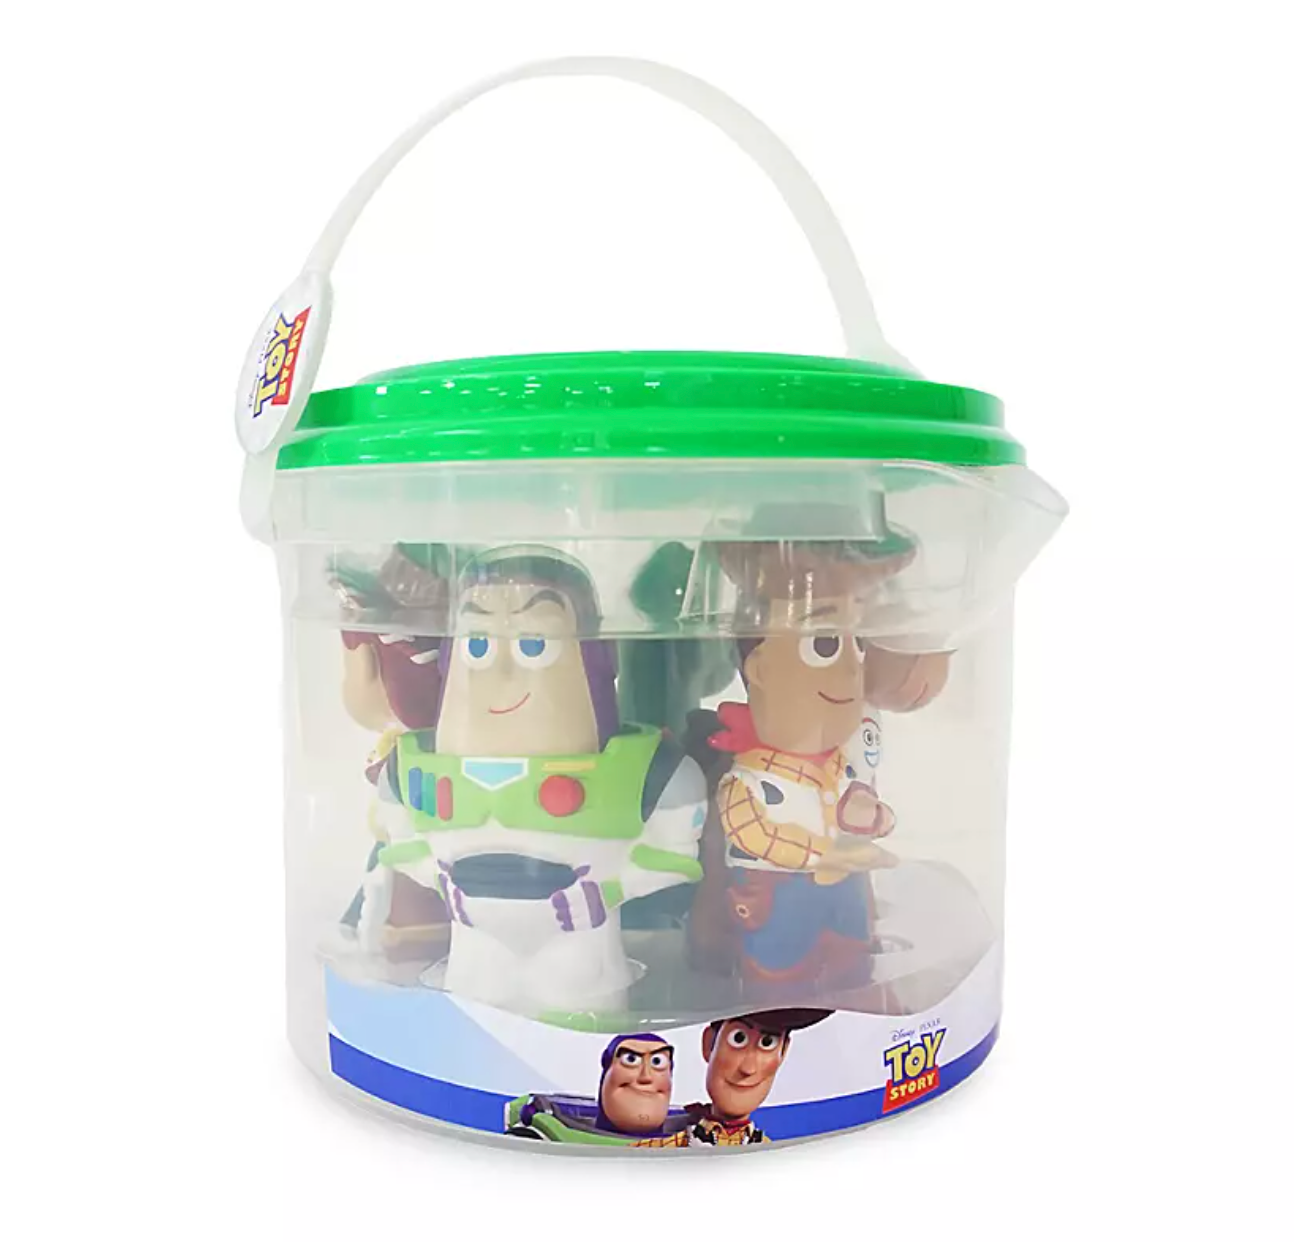 Disney Toy Story Woody Buzz Jessie Bullseye Rex Bucket Bath Toy Set New with Tag